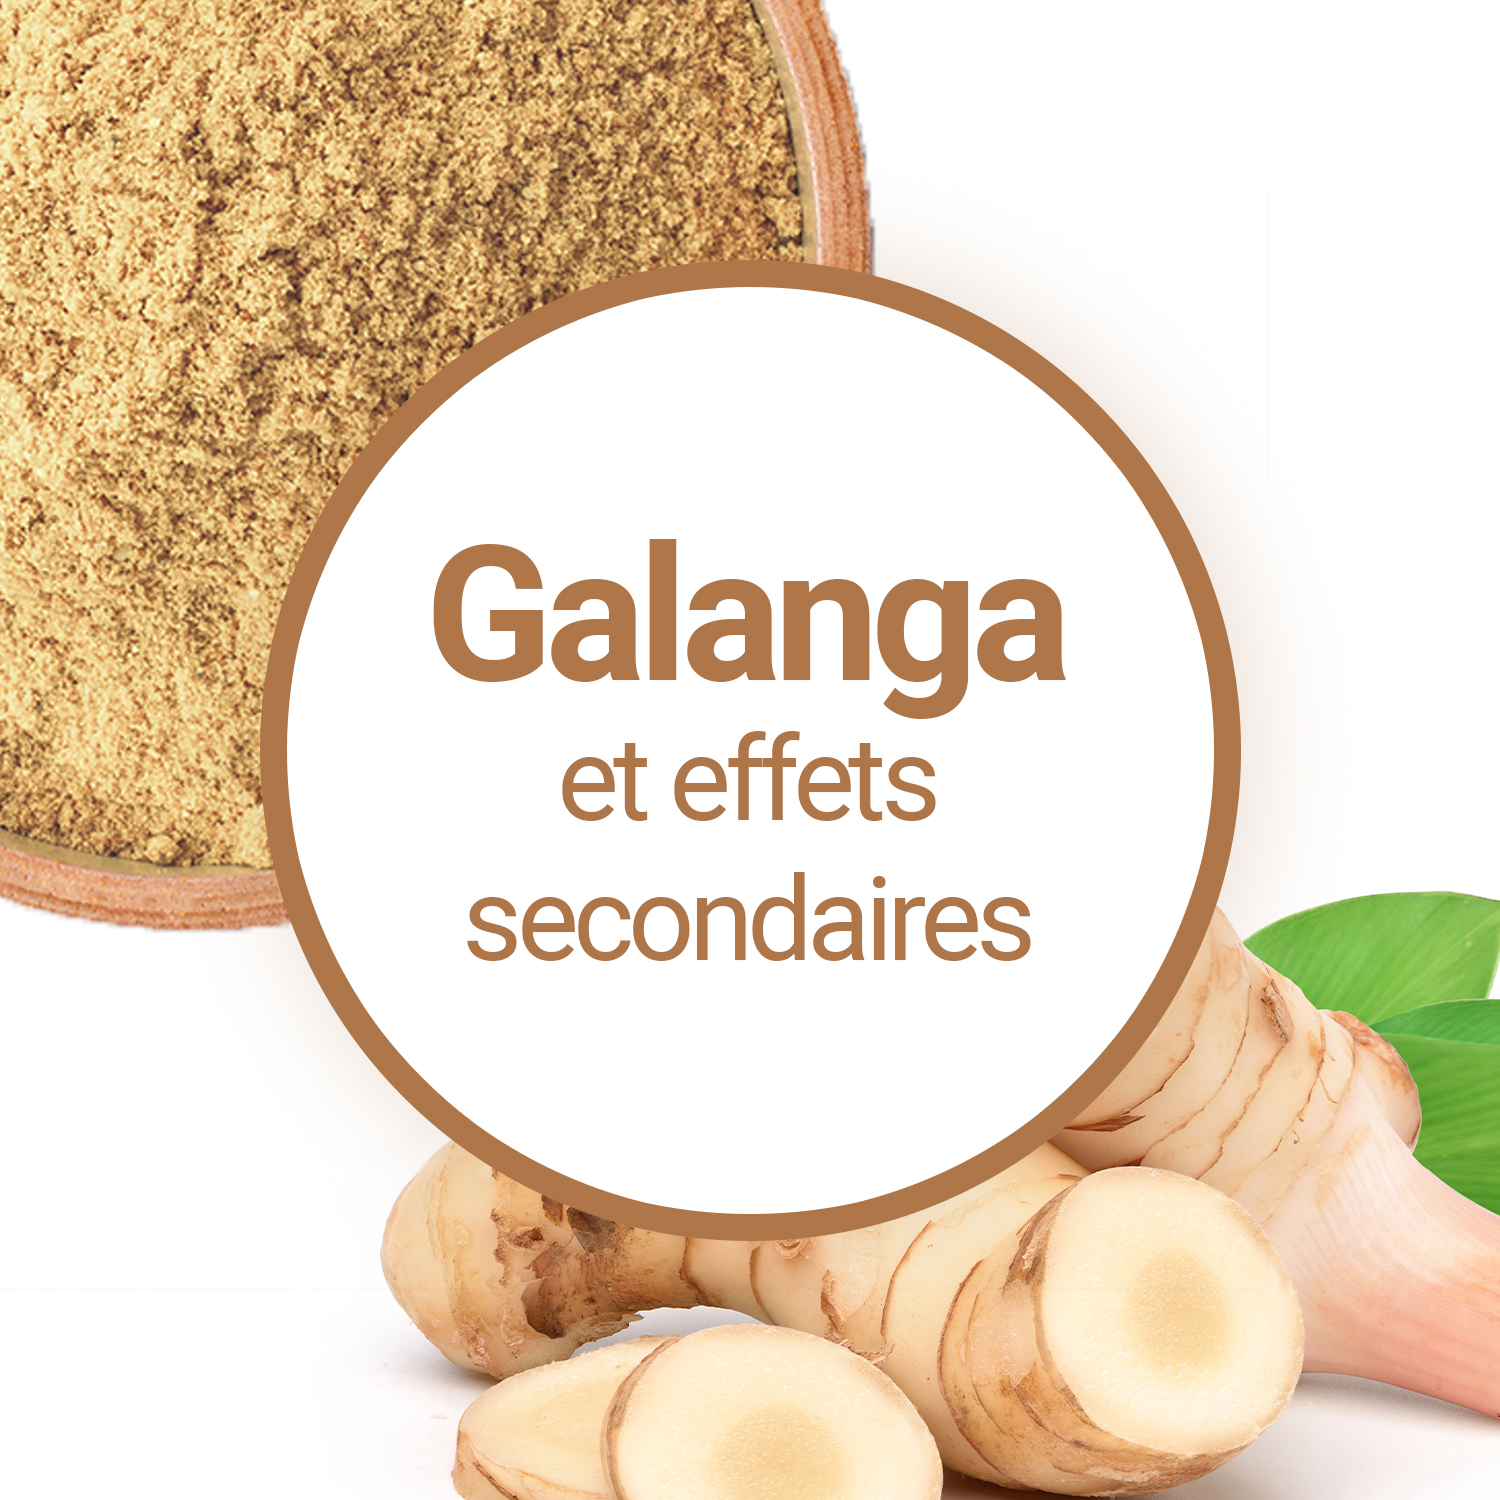 Le Galanga provoque-t-il des effets secondaires ?